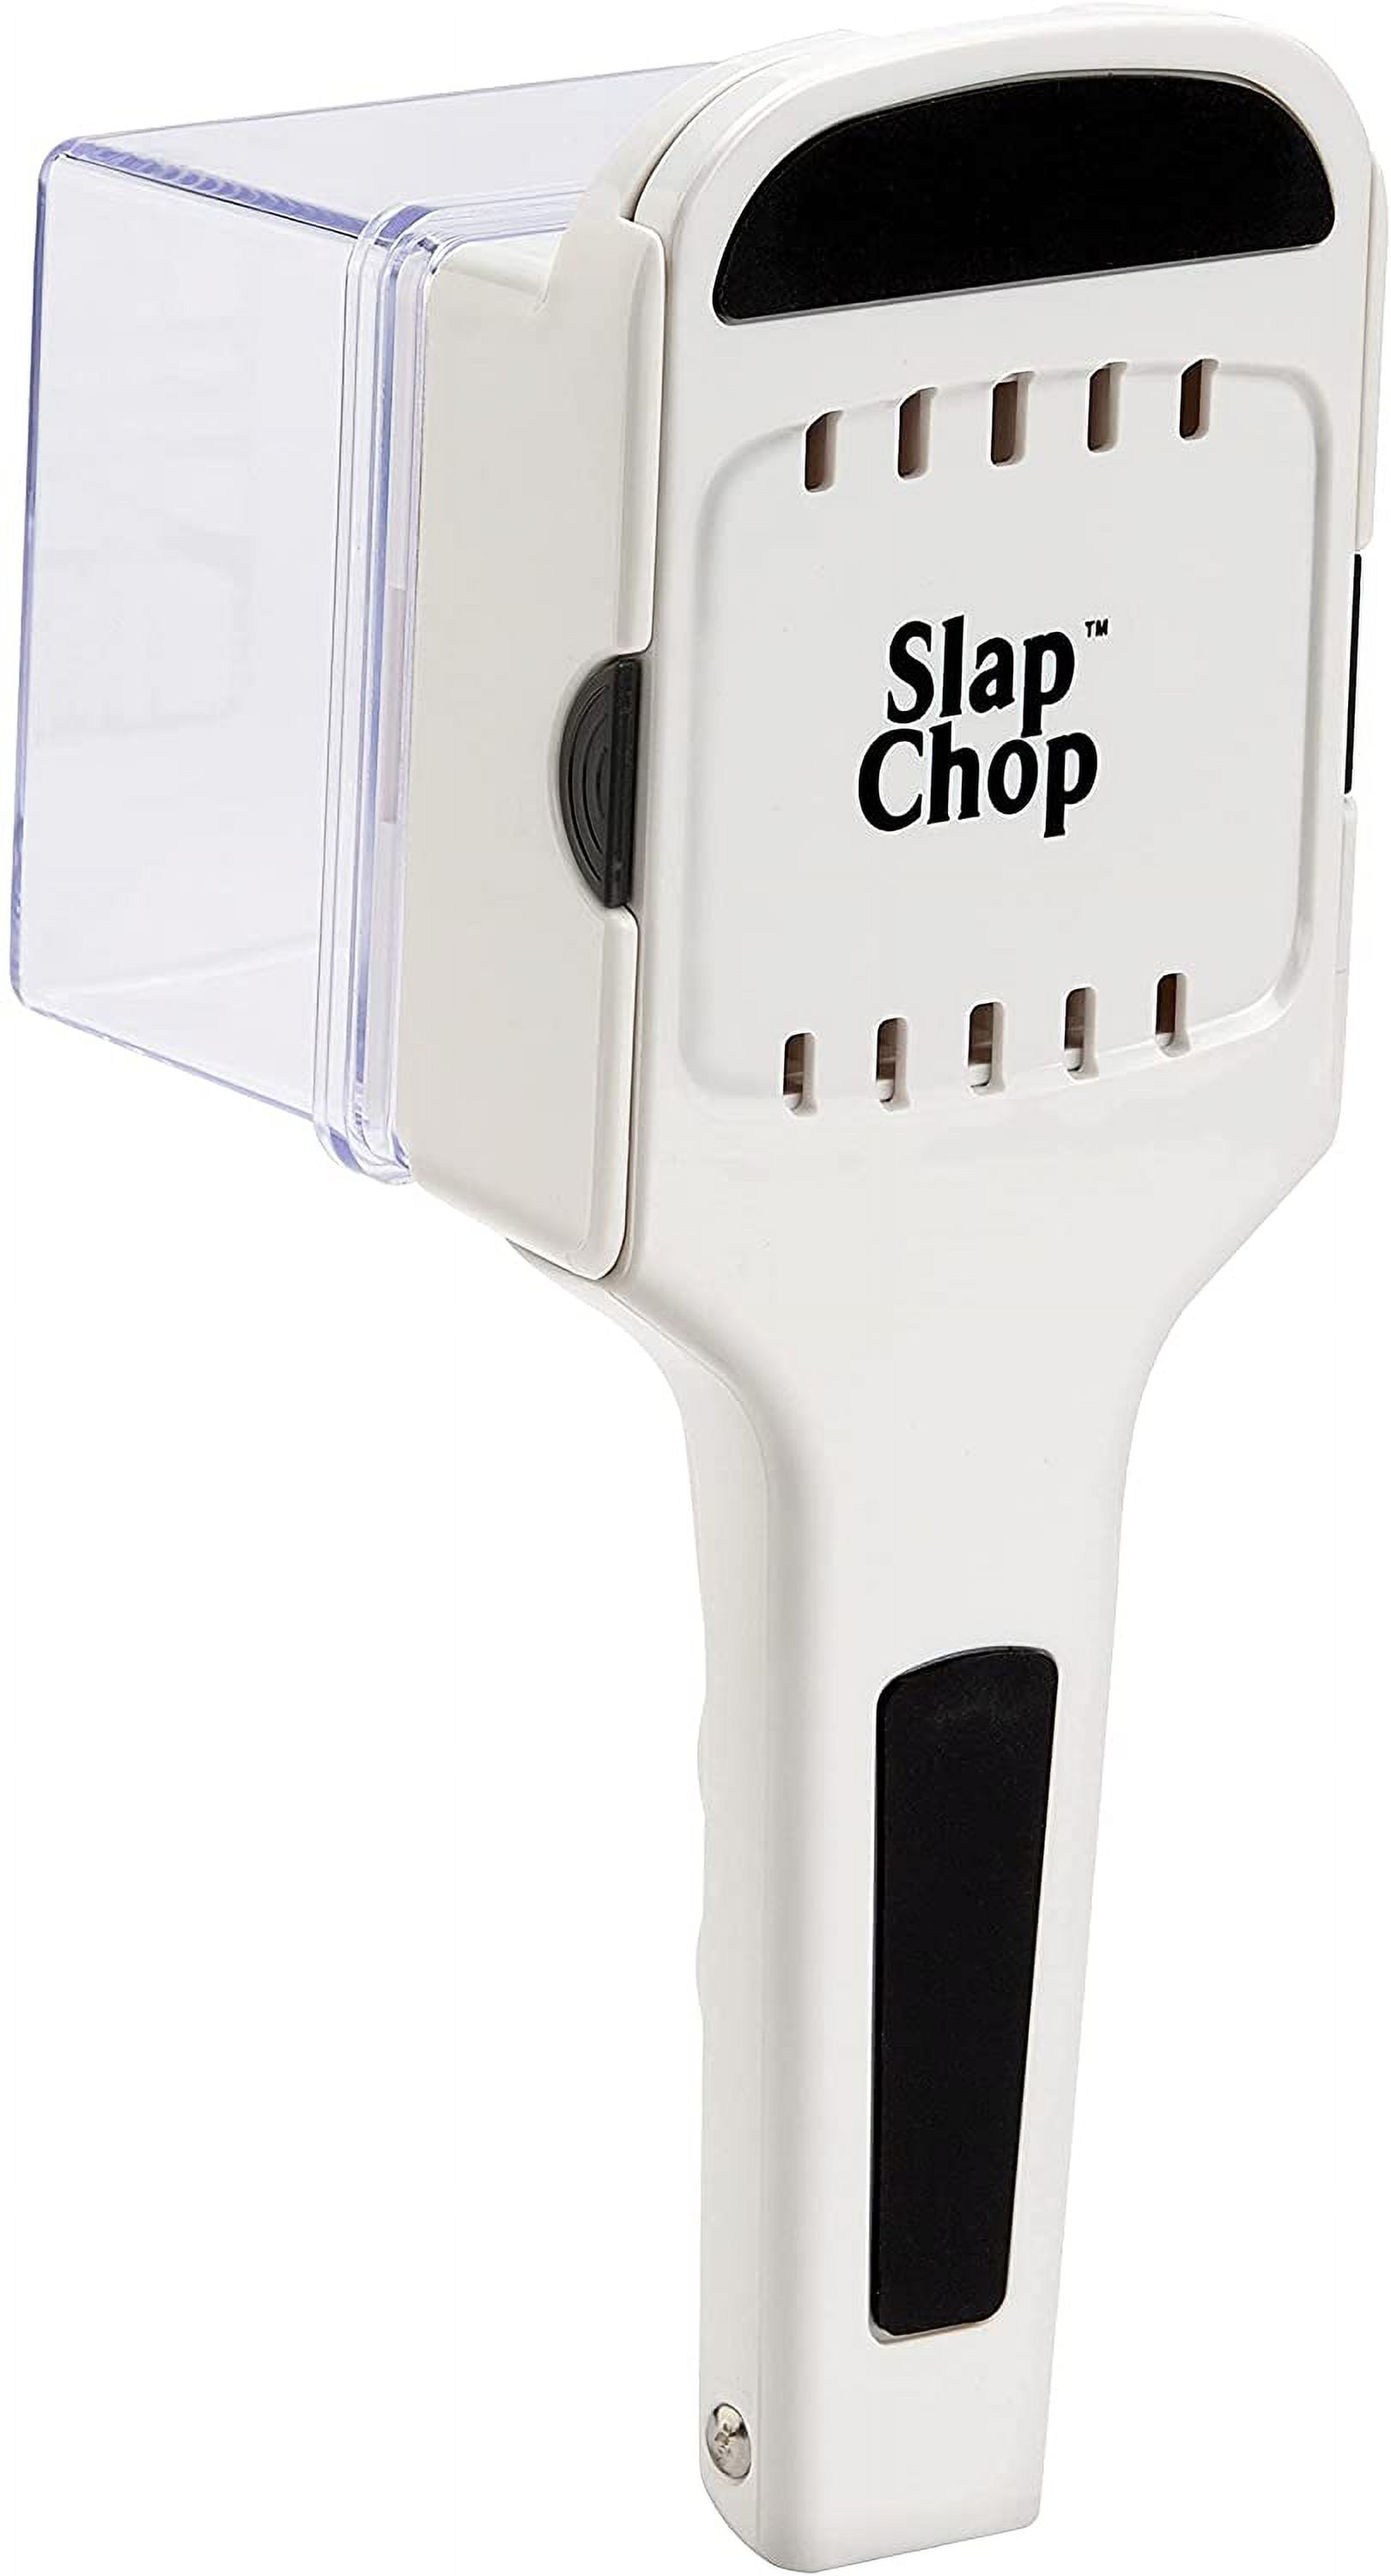 Slap chop for Ginger! : r/MealPrepSunday